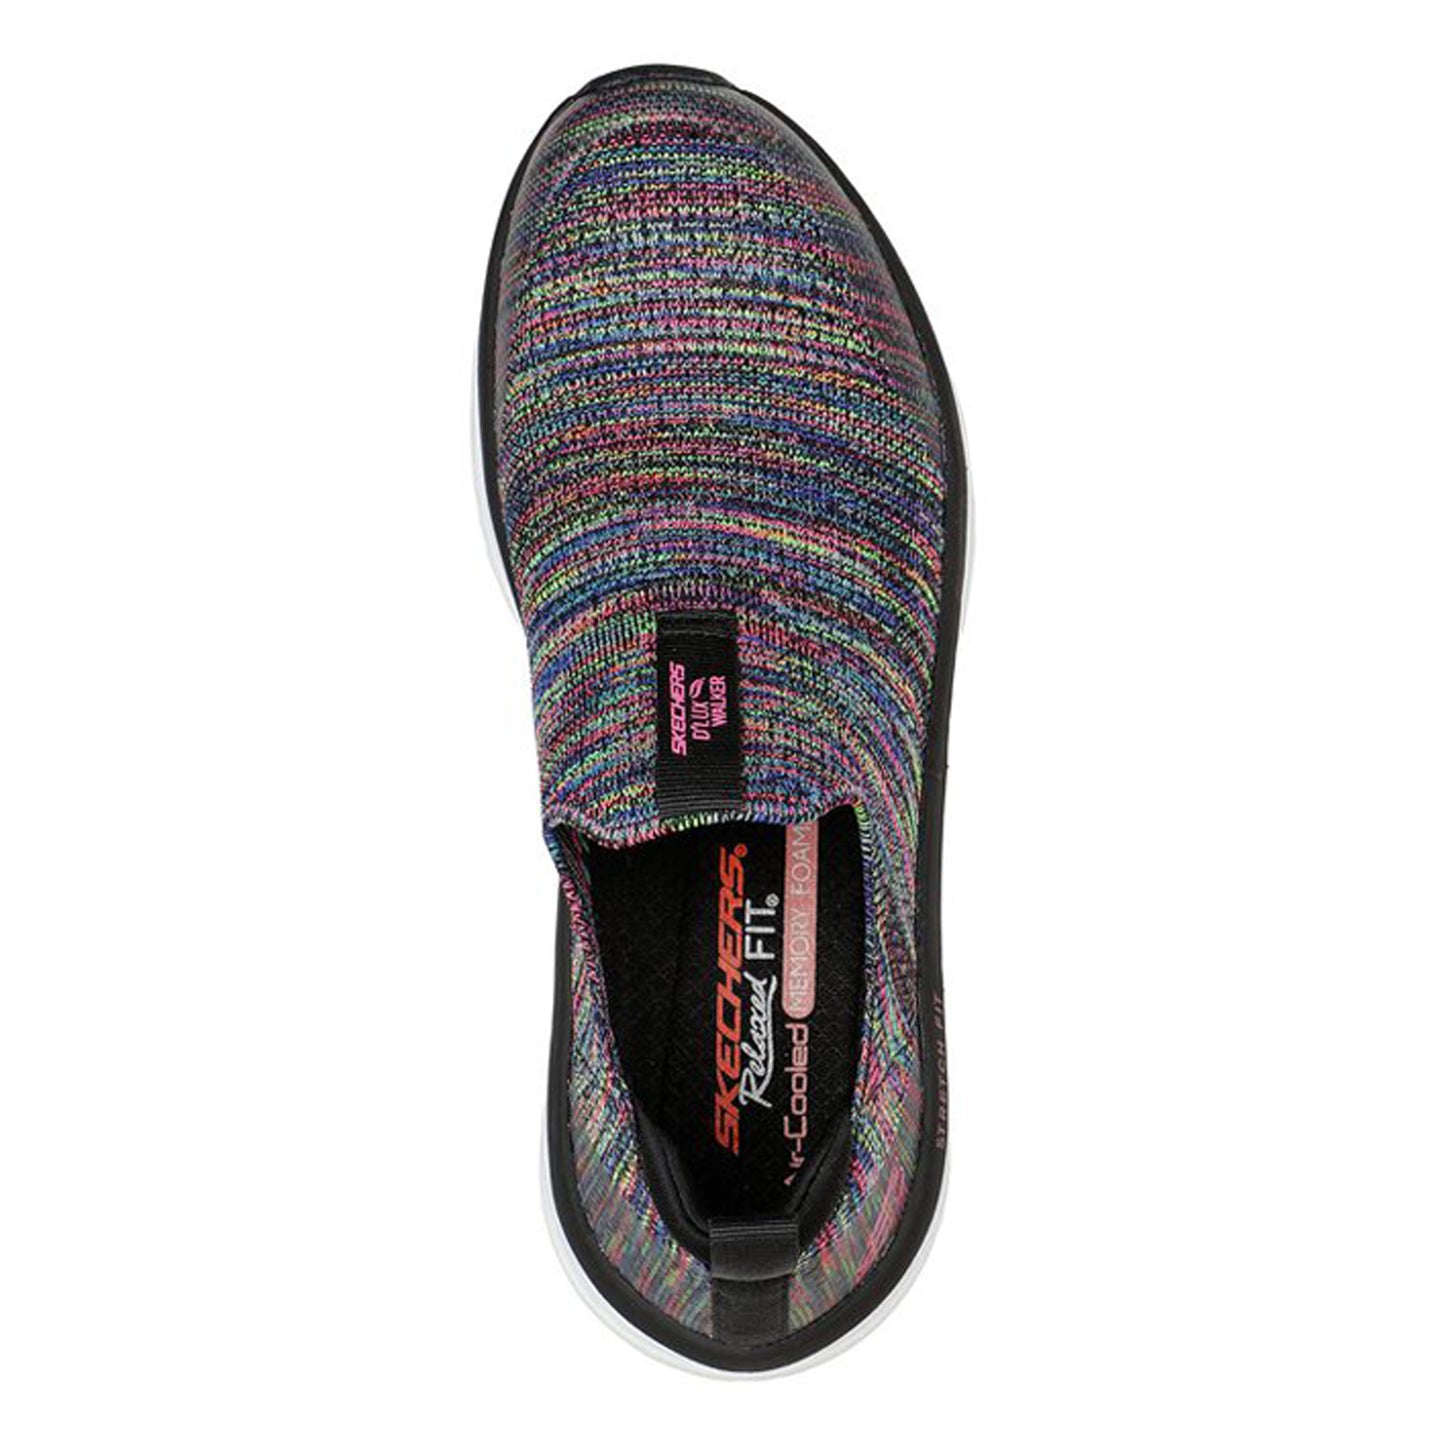 Peltz Shoes  Women's Skechers Relaxed Fit: D'Lux Walker - Rainbow Sky Walking Shoe BLACK MULTI 149367-BKMT